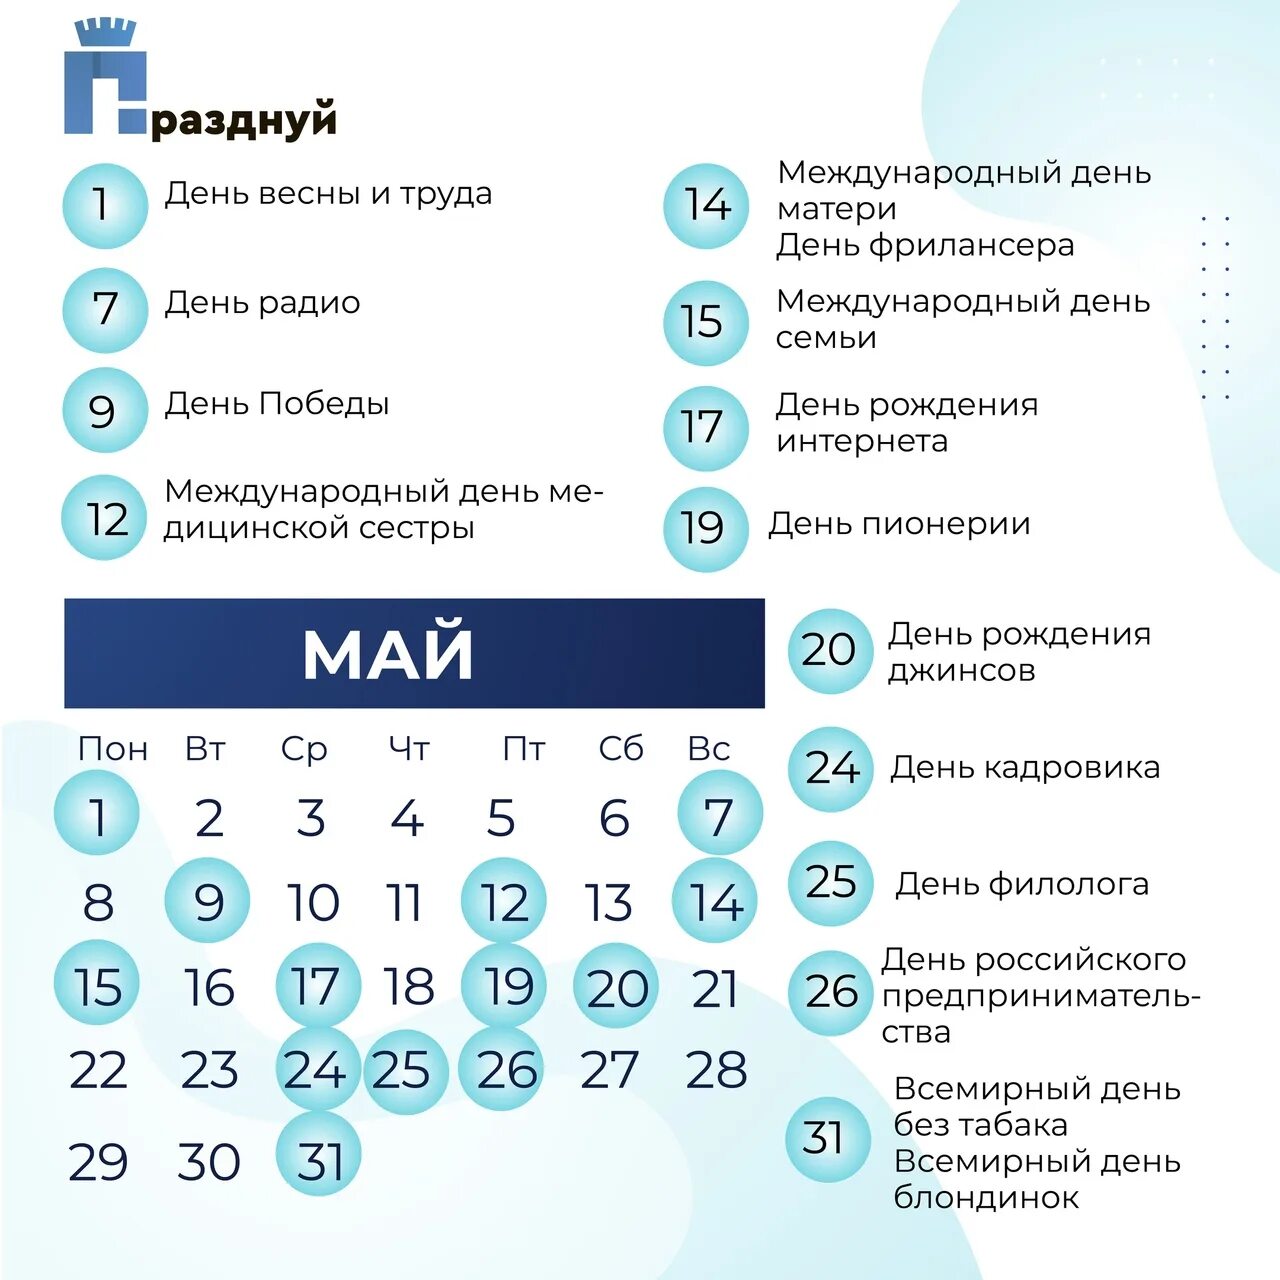 2 мая выходной или рабочий день. Майские выходные 2023. Выходные на майские праздники 2023. Праздники в России 2023. Майские выходные в 2023 году в России.